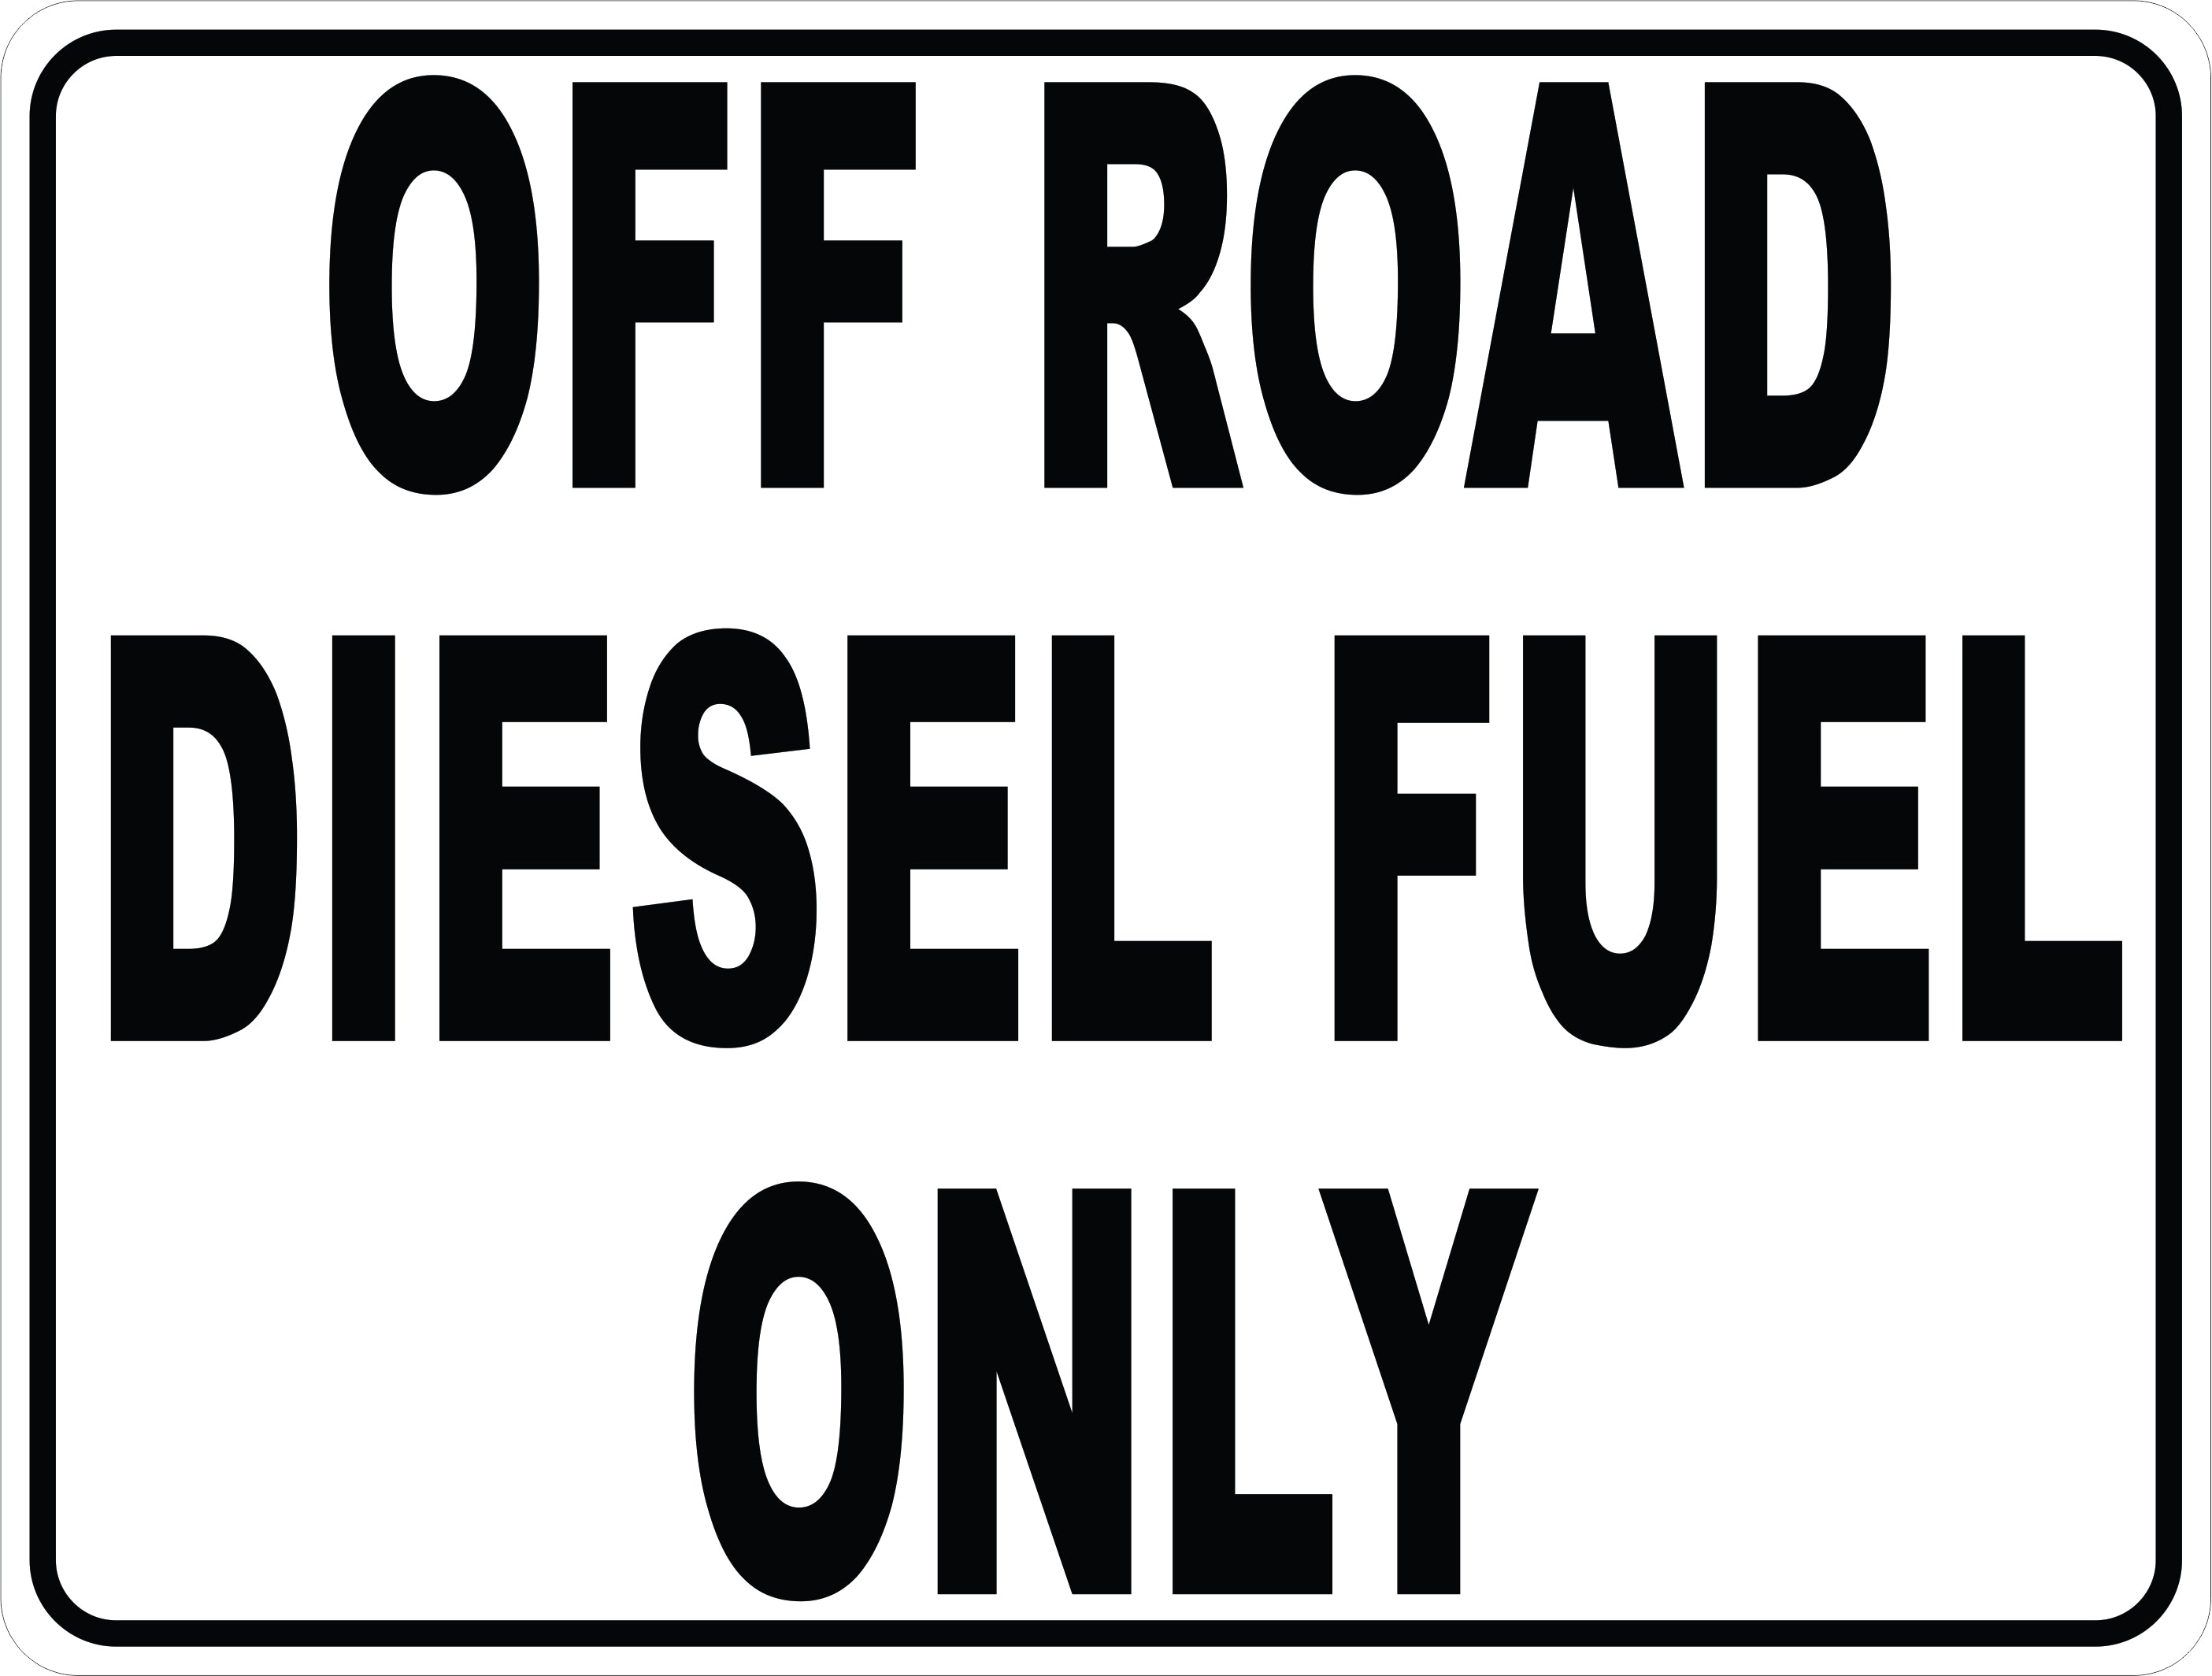 off road diesel fuel